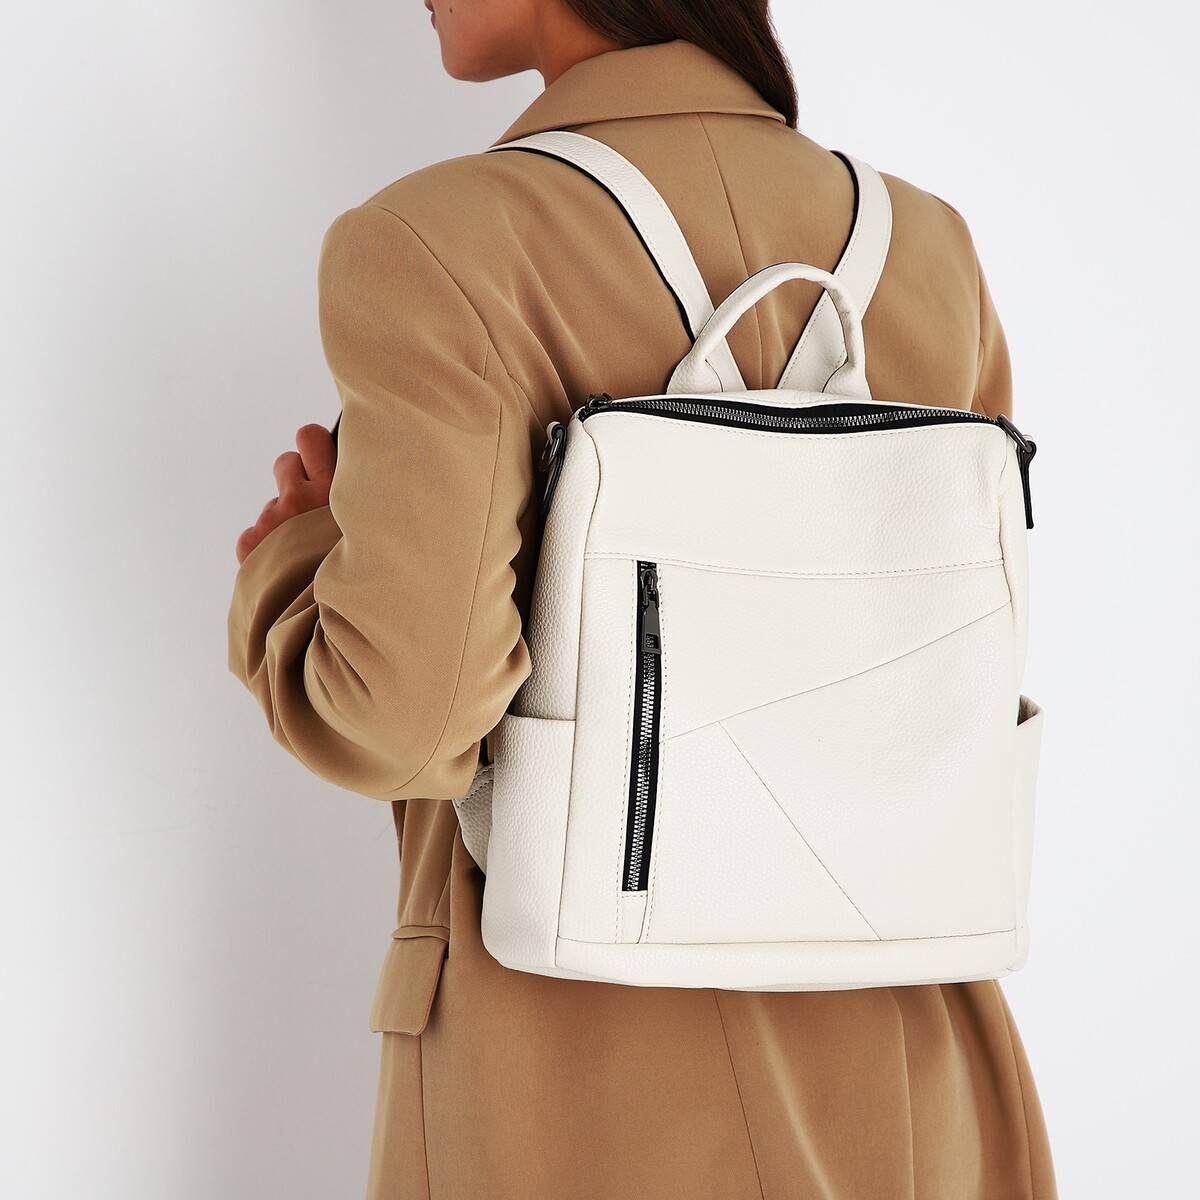 Рюкзак женский из искусственной кожи на молнии, 4 кармана, цвет молочный искусственная кожа 137 × 50 см 0 5 мм молочный